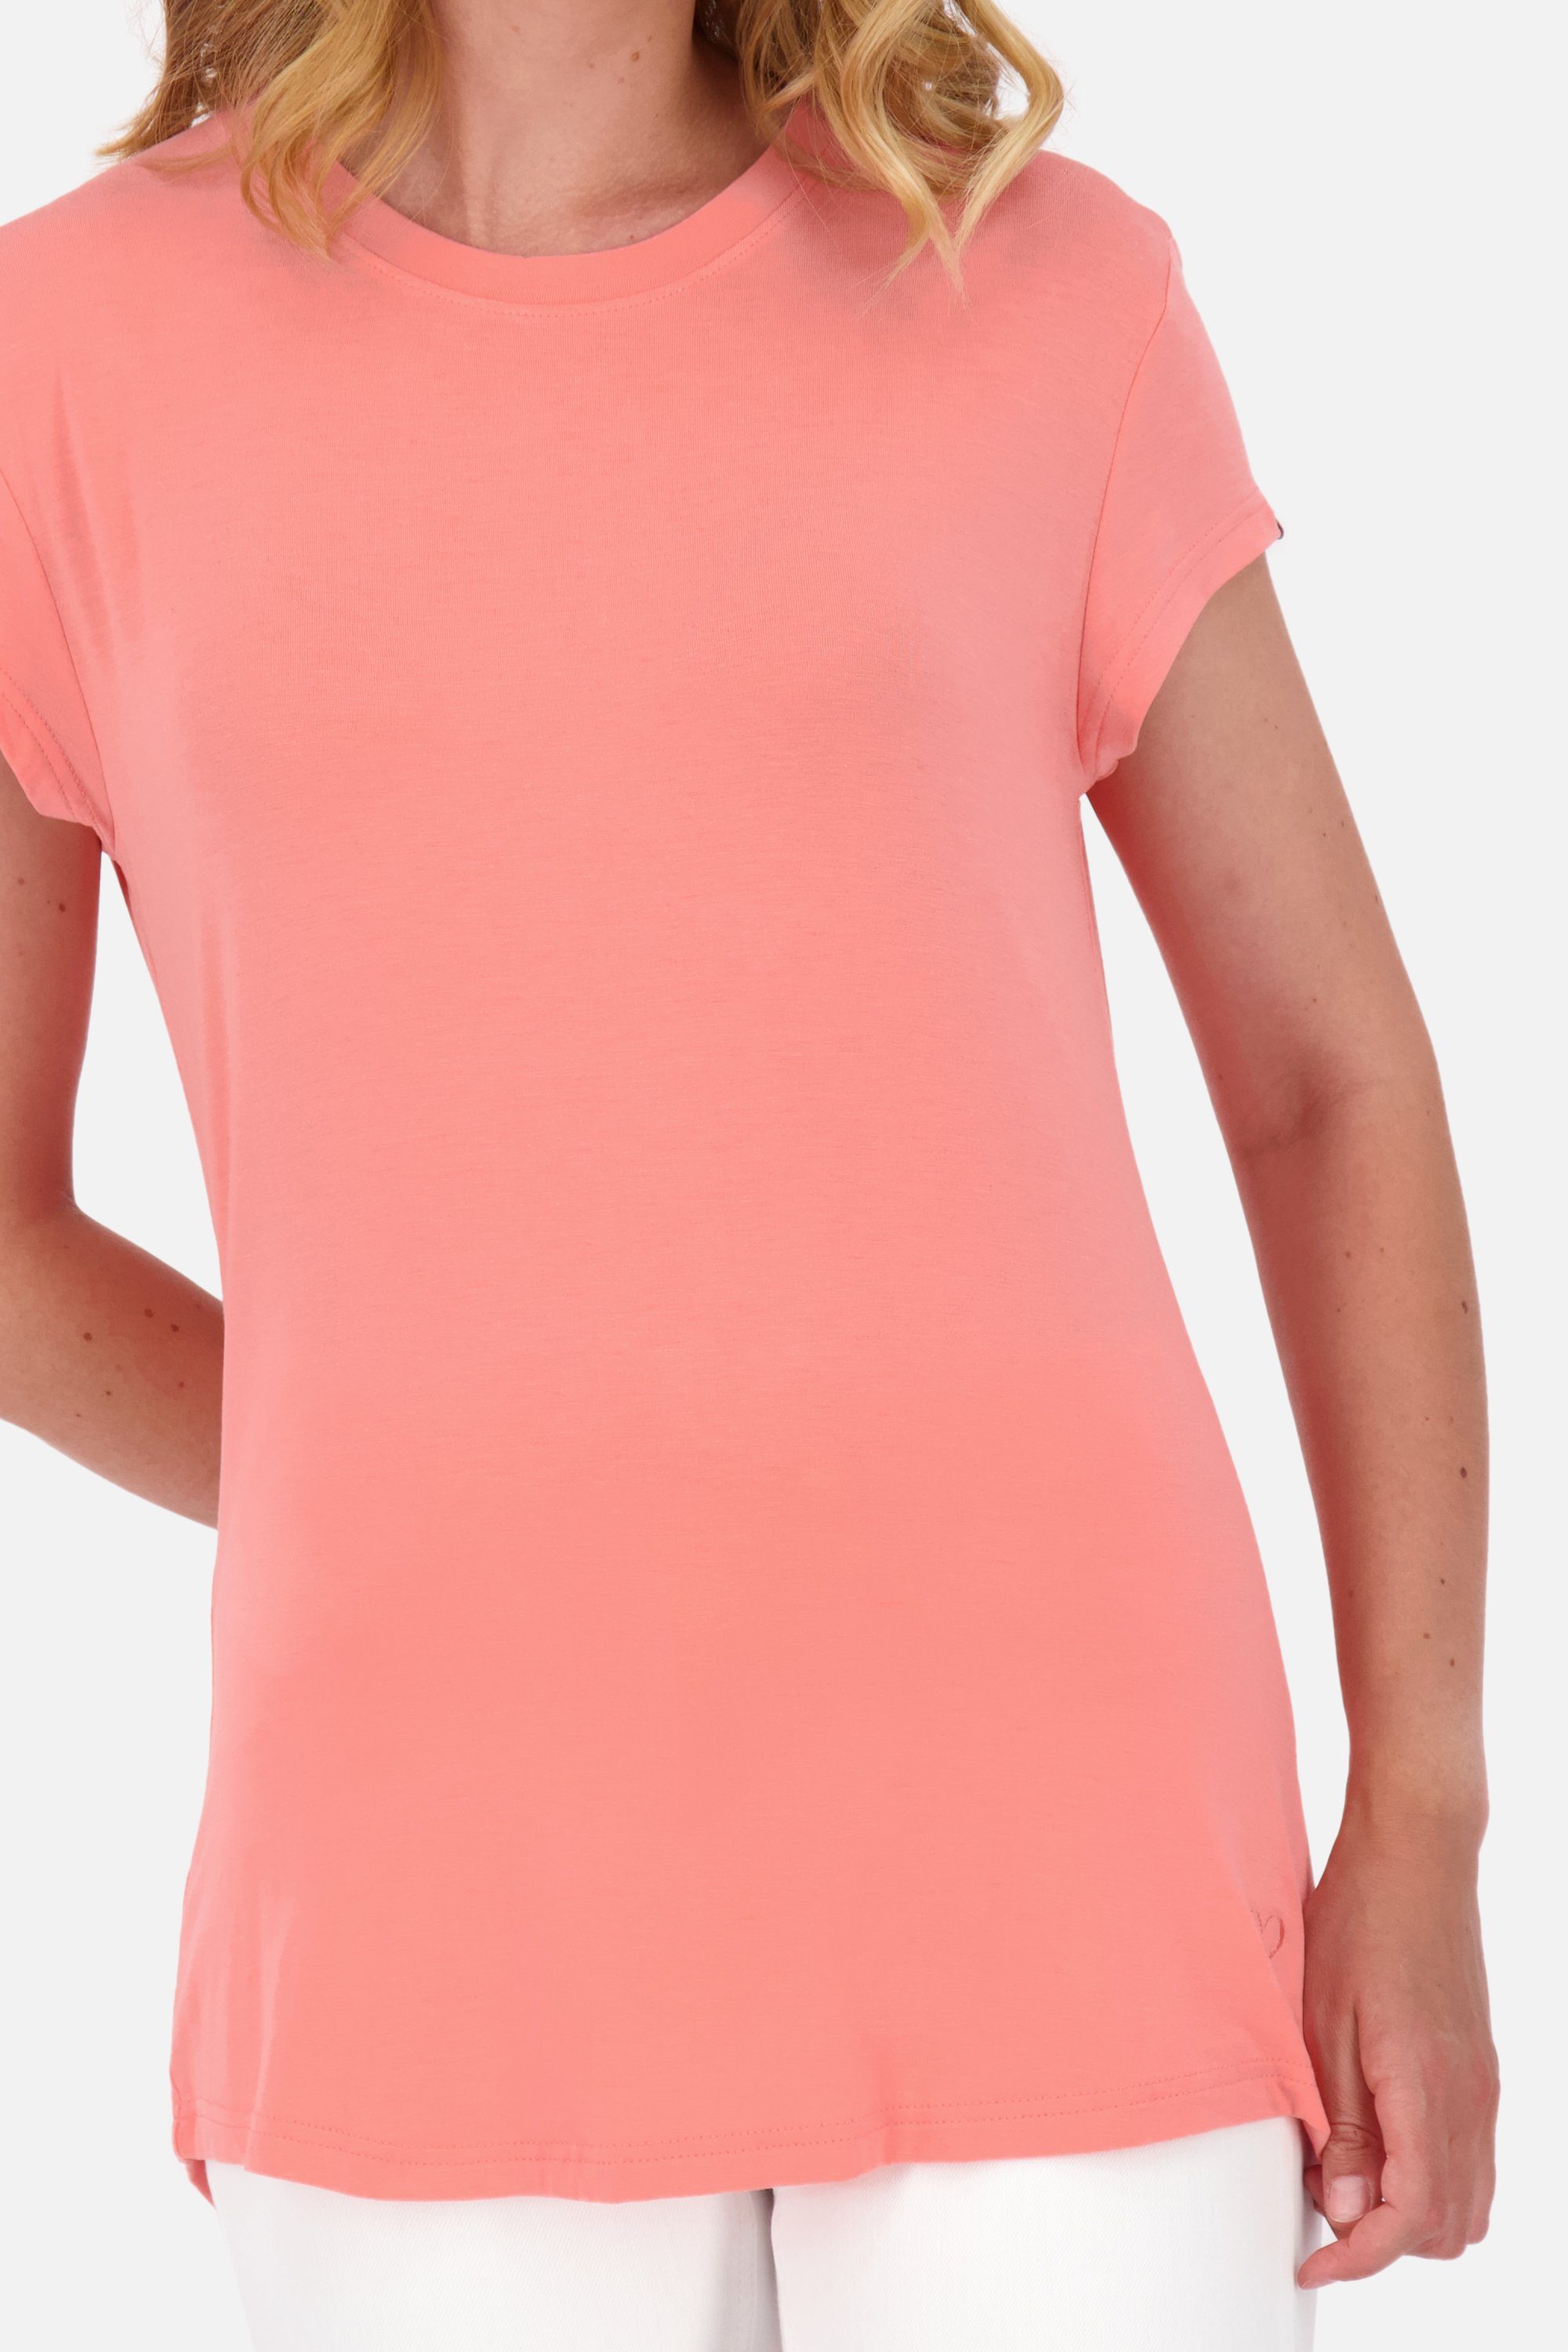 Alife & Kickin Shirt Kurzarmshirt, A MimmyAK peach Rundhalsshirt Shirt Damen